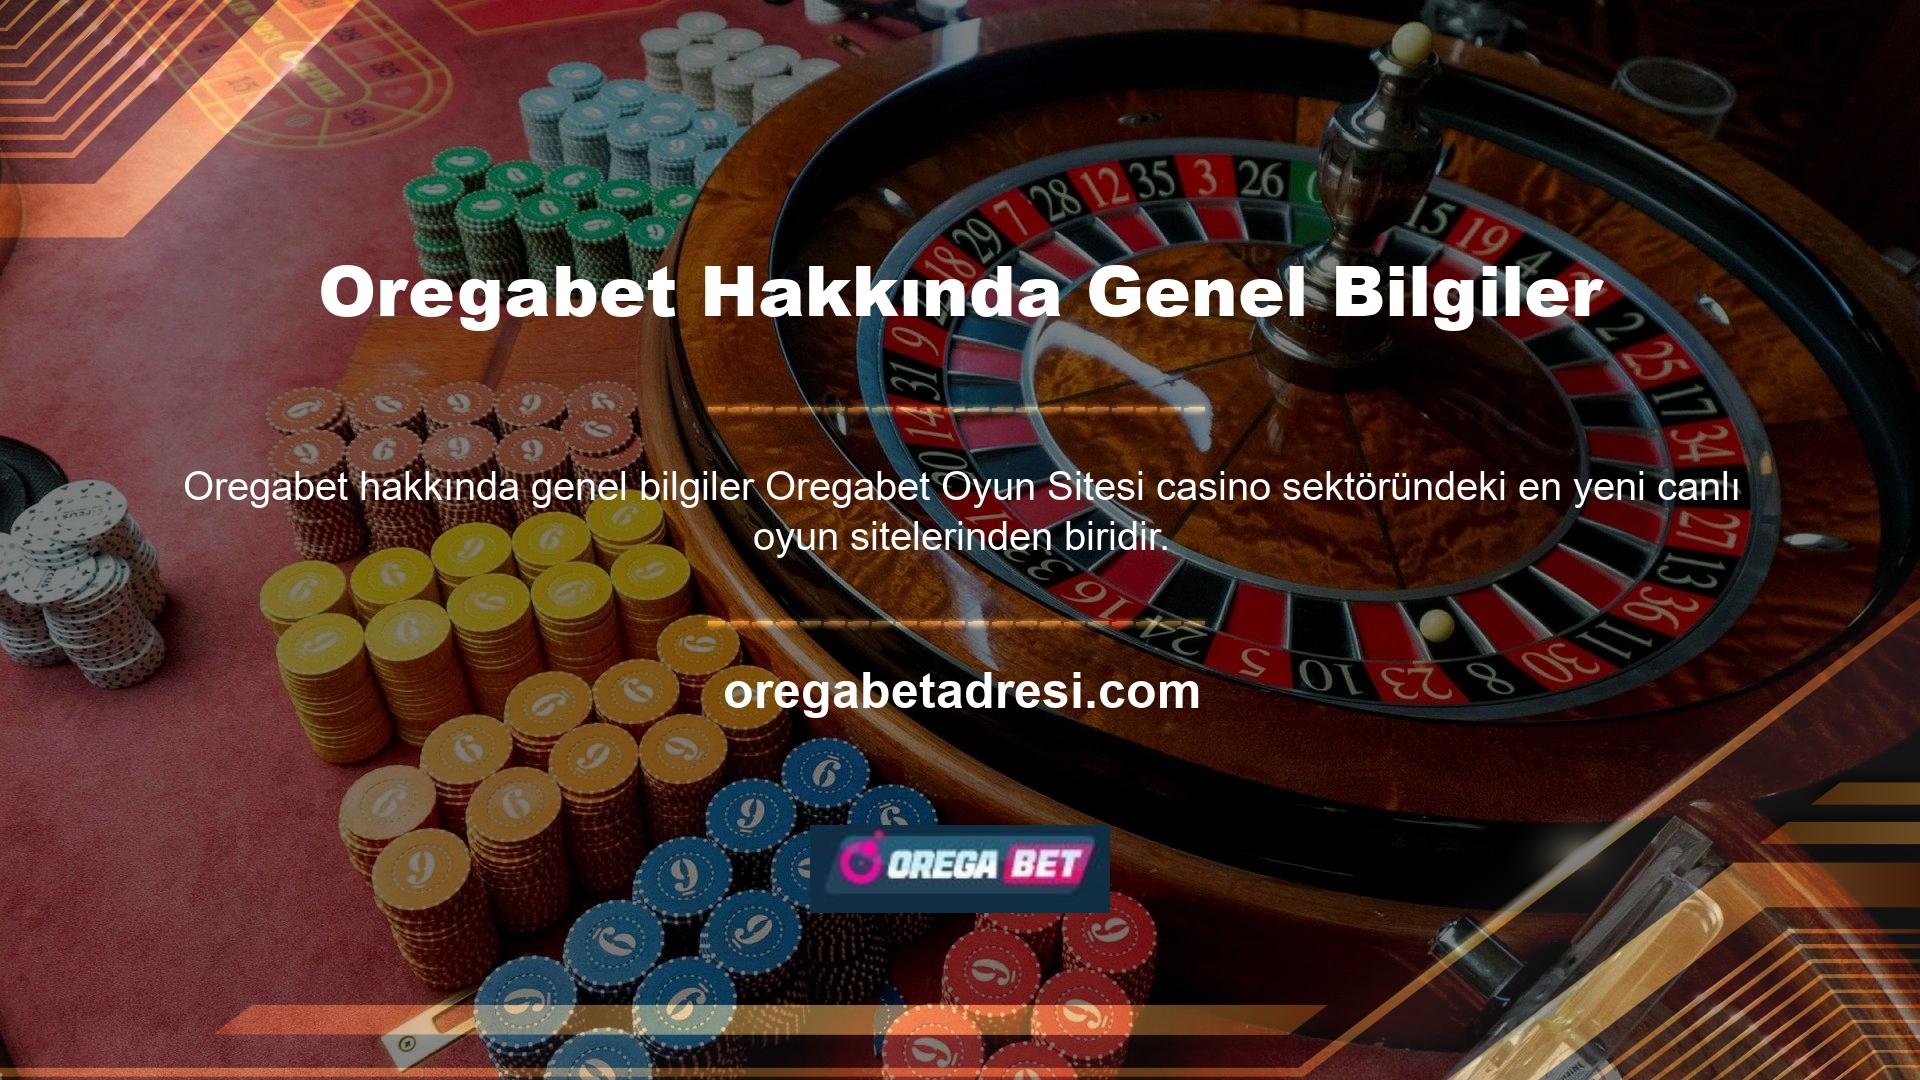 Oregabet web sitesi Türkçe ve İngilizce olmak üzere iki dilde hizmet vermektedir